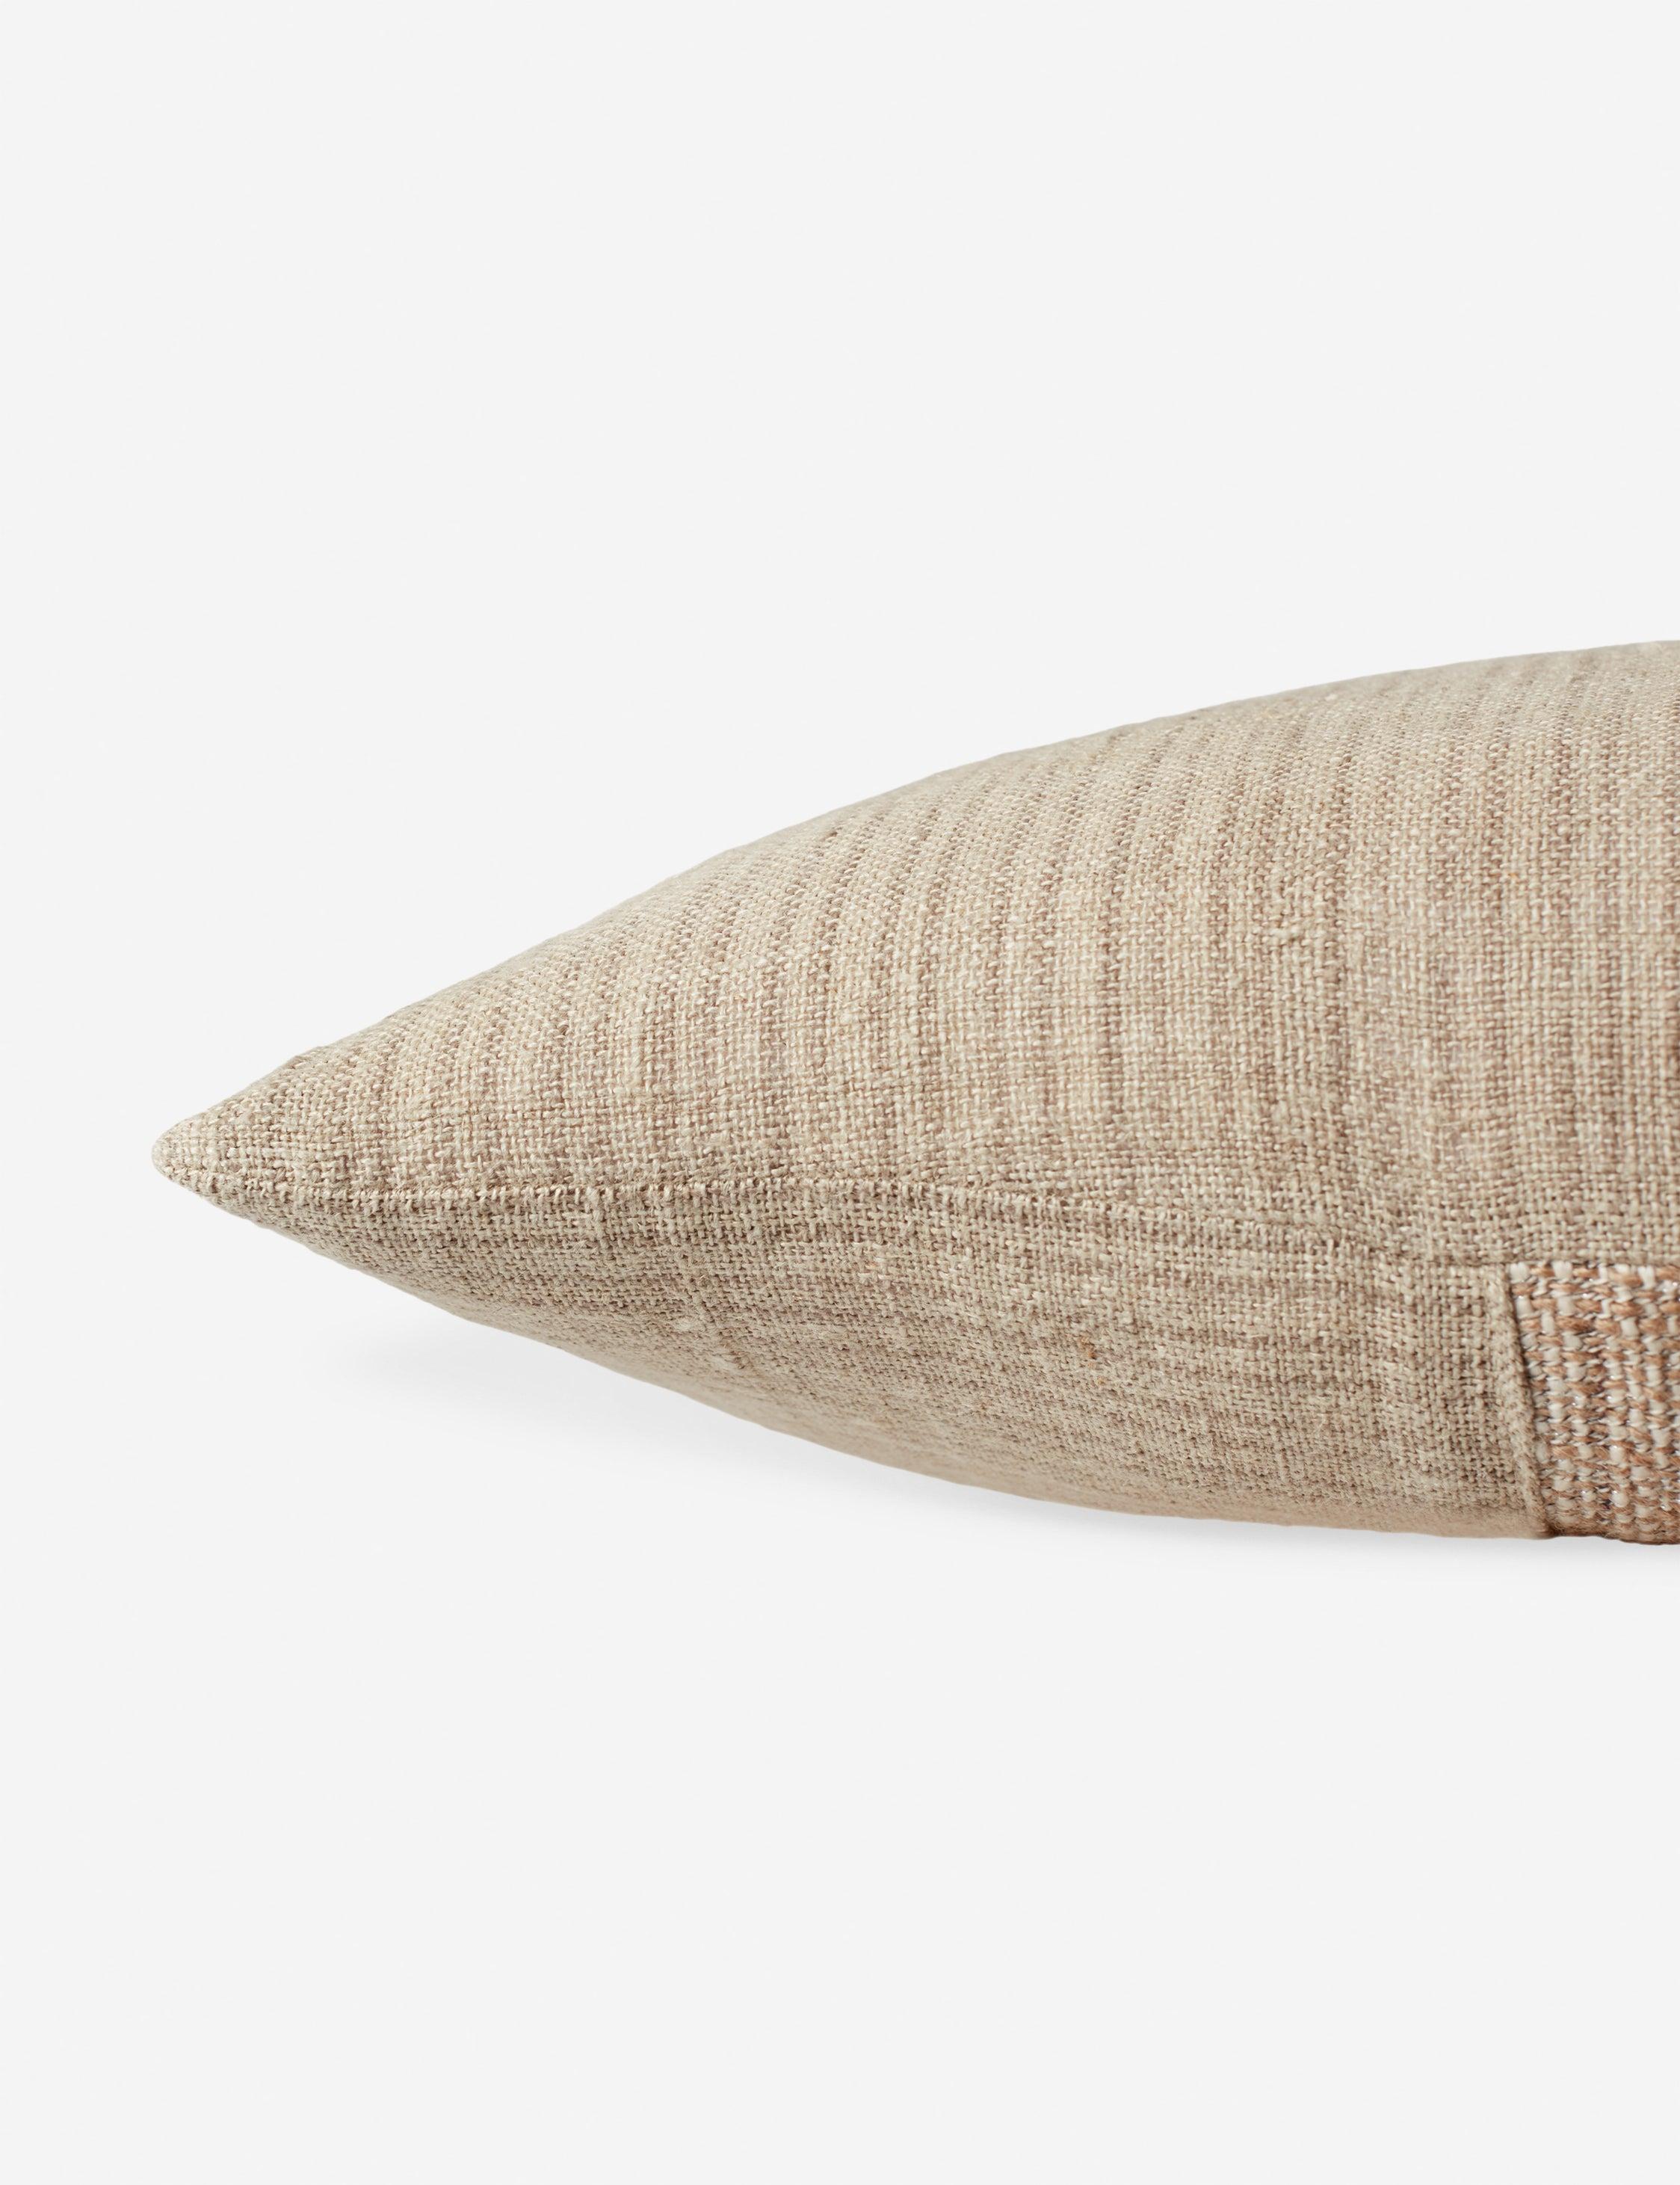 Asger Earthy Tones Reversible Lumbar Pillow in Light Brown/Cream